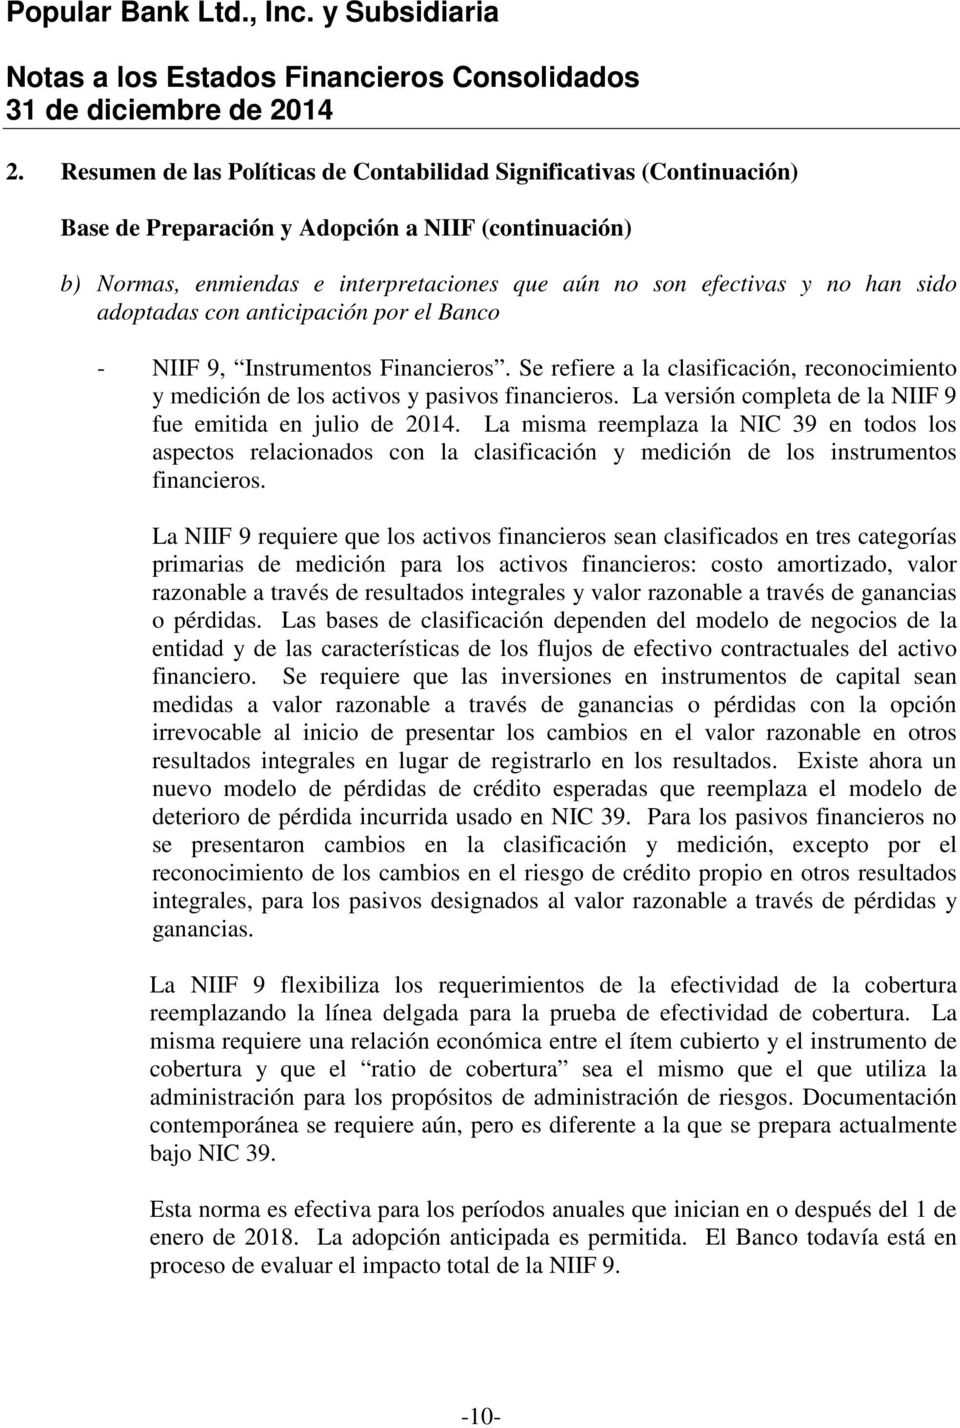 La versión completa de la NIIF 9 fue emitida en julio de 2014. La misma reemplaza la NIC 39 en todos los aspectos relacionados con la clasificación y medición de los instrumentos financieros.